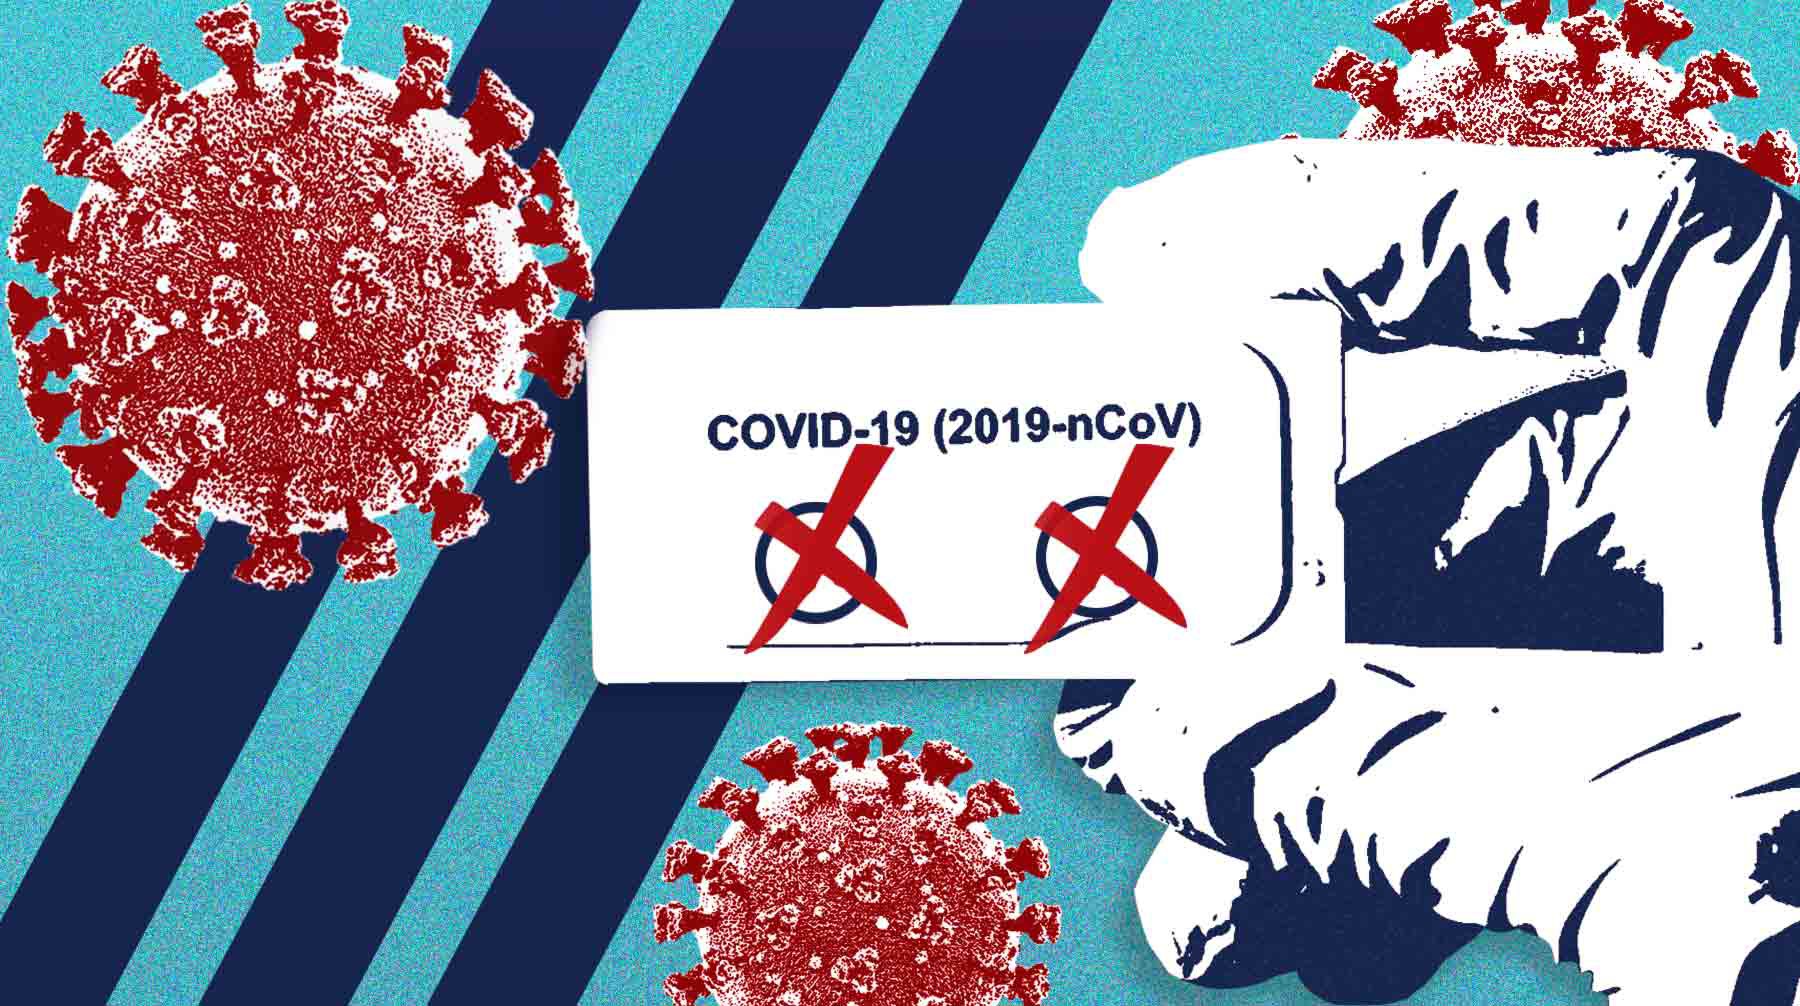 Dailystorm - В Москве больные COVID-19 могут получить справку с отрицательным результатом на коронавирус за 2500 рублей